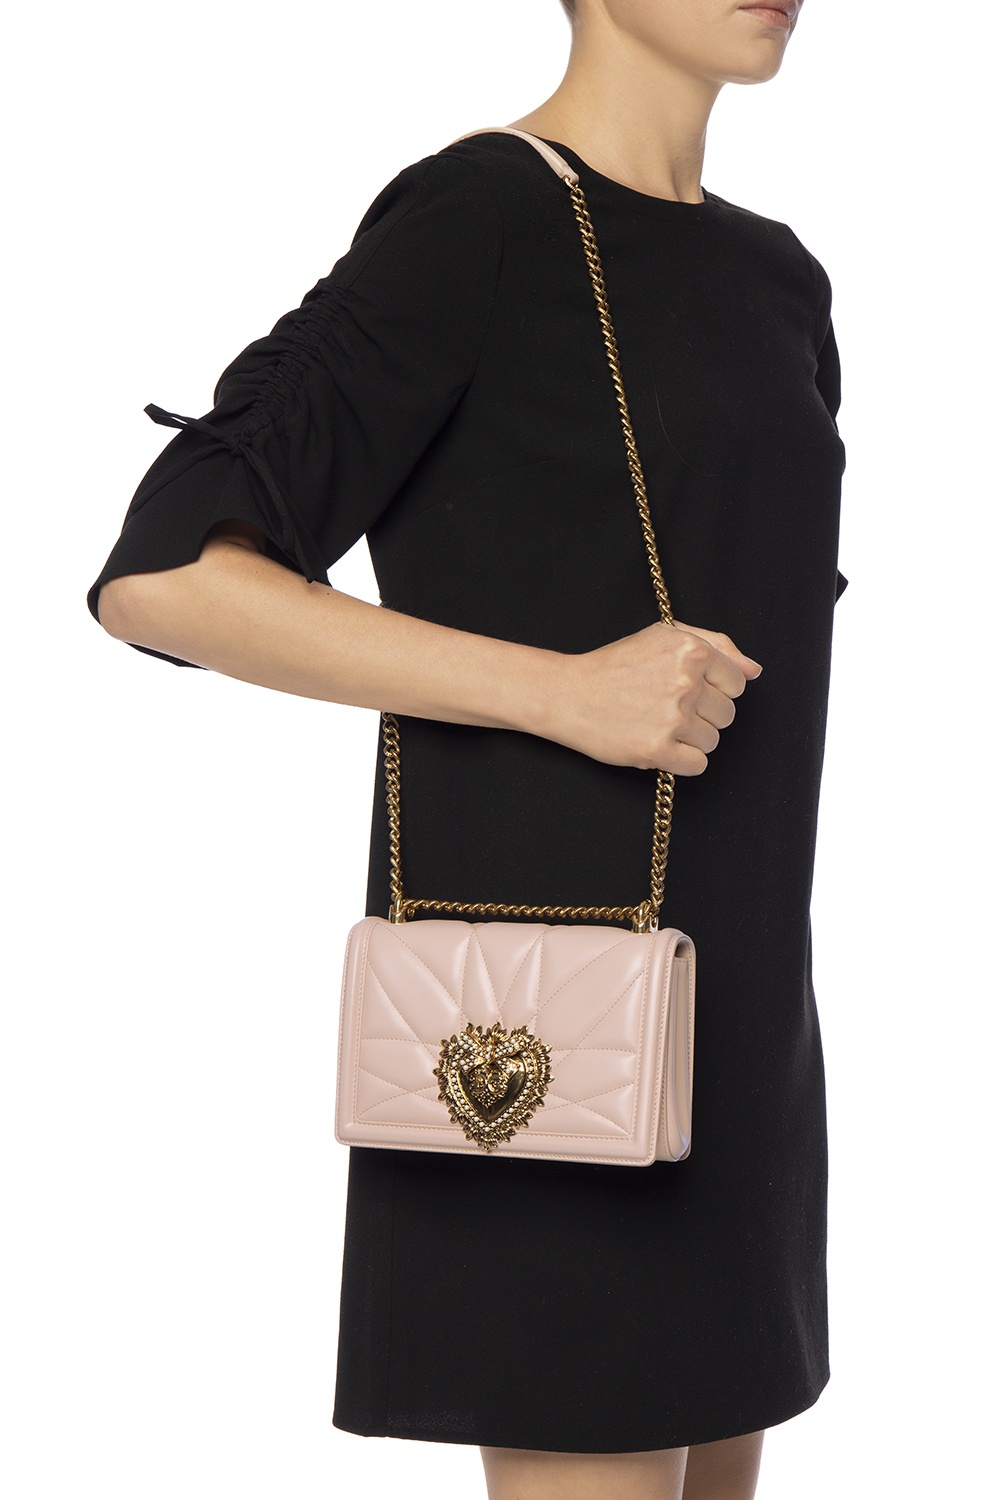 Pink 'Devotion' quilted shoulder bag Dolce & Gabbana - Vitkac France